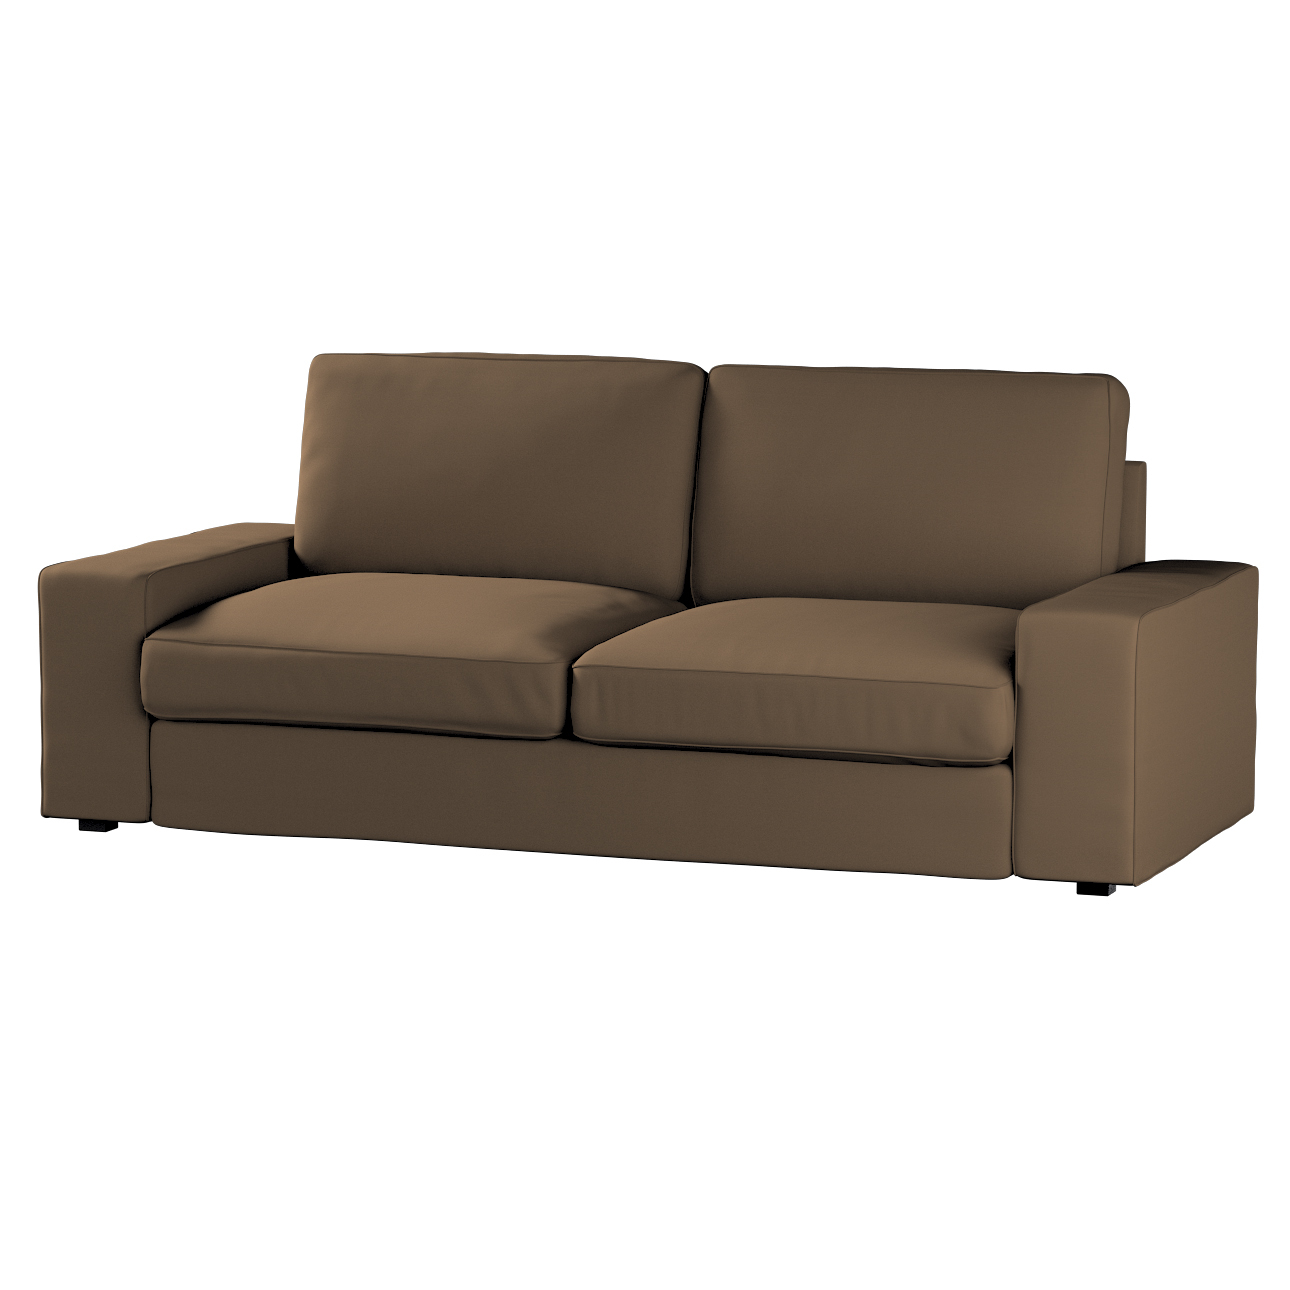 Bezug für Kivik 3-Sitzer Sofa, mocca, Bezug für Sofa Kivik 3-Sitzer, Cotton günstig online kaufen